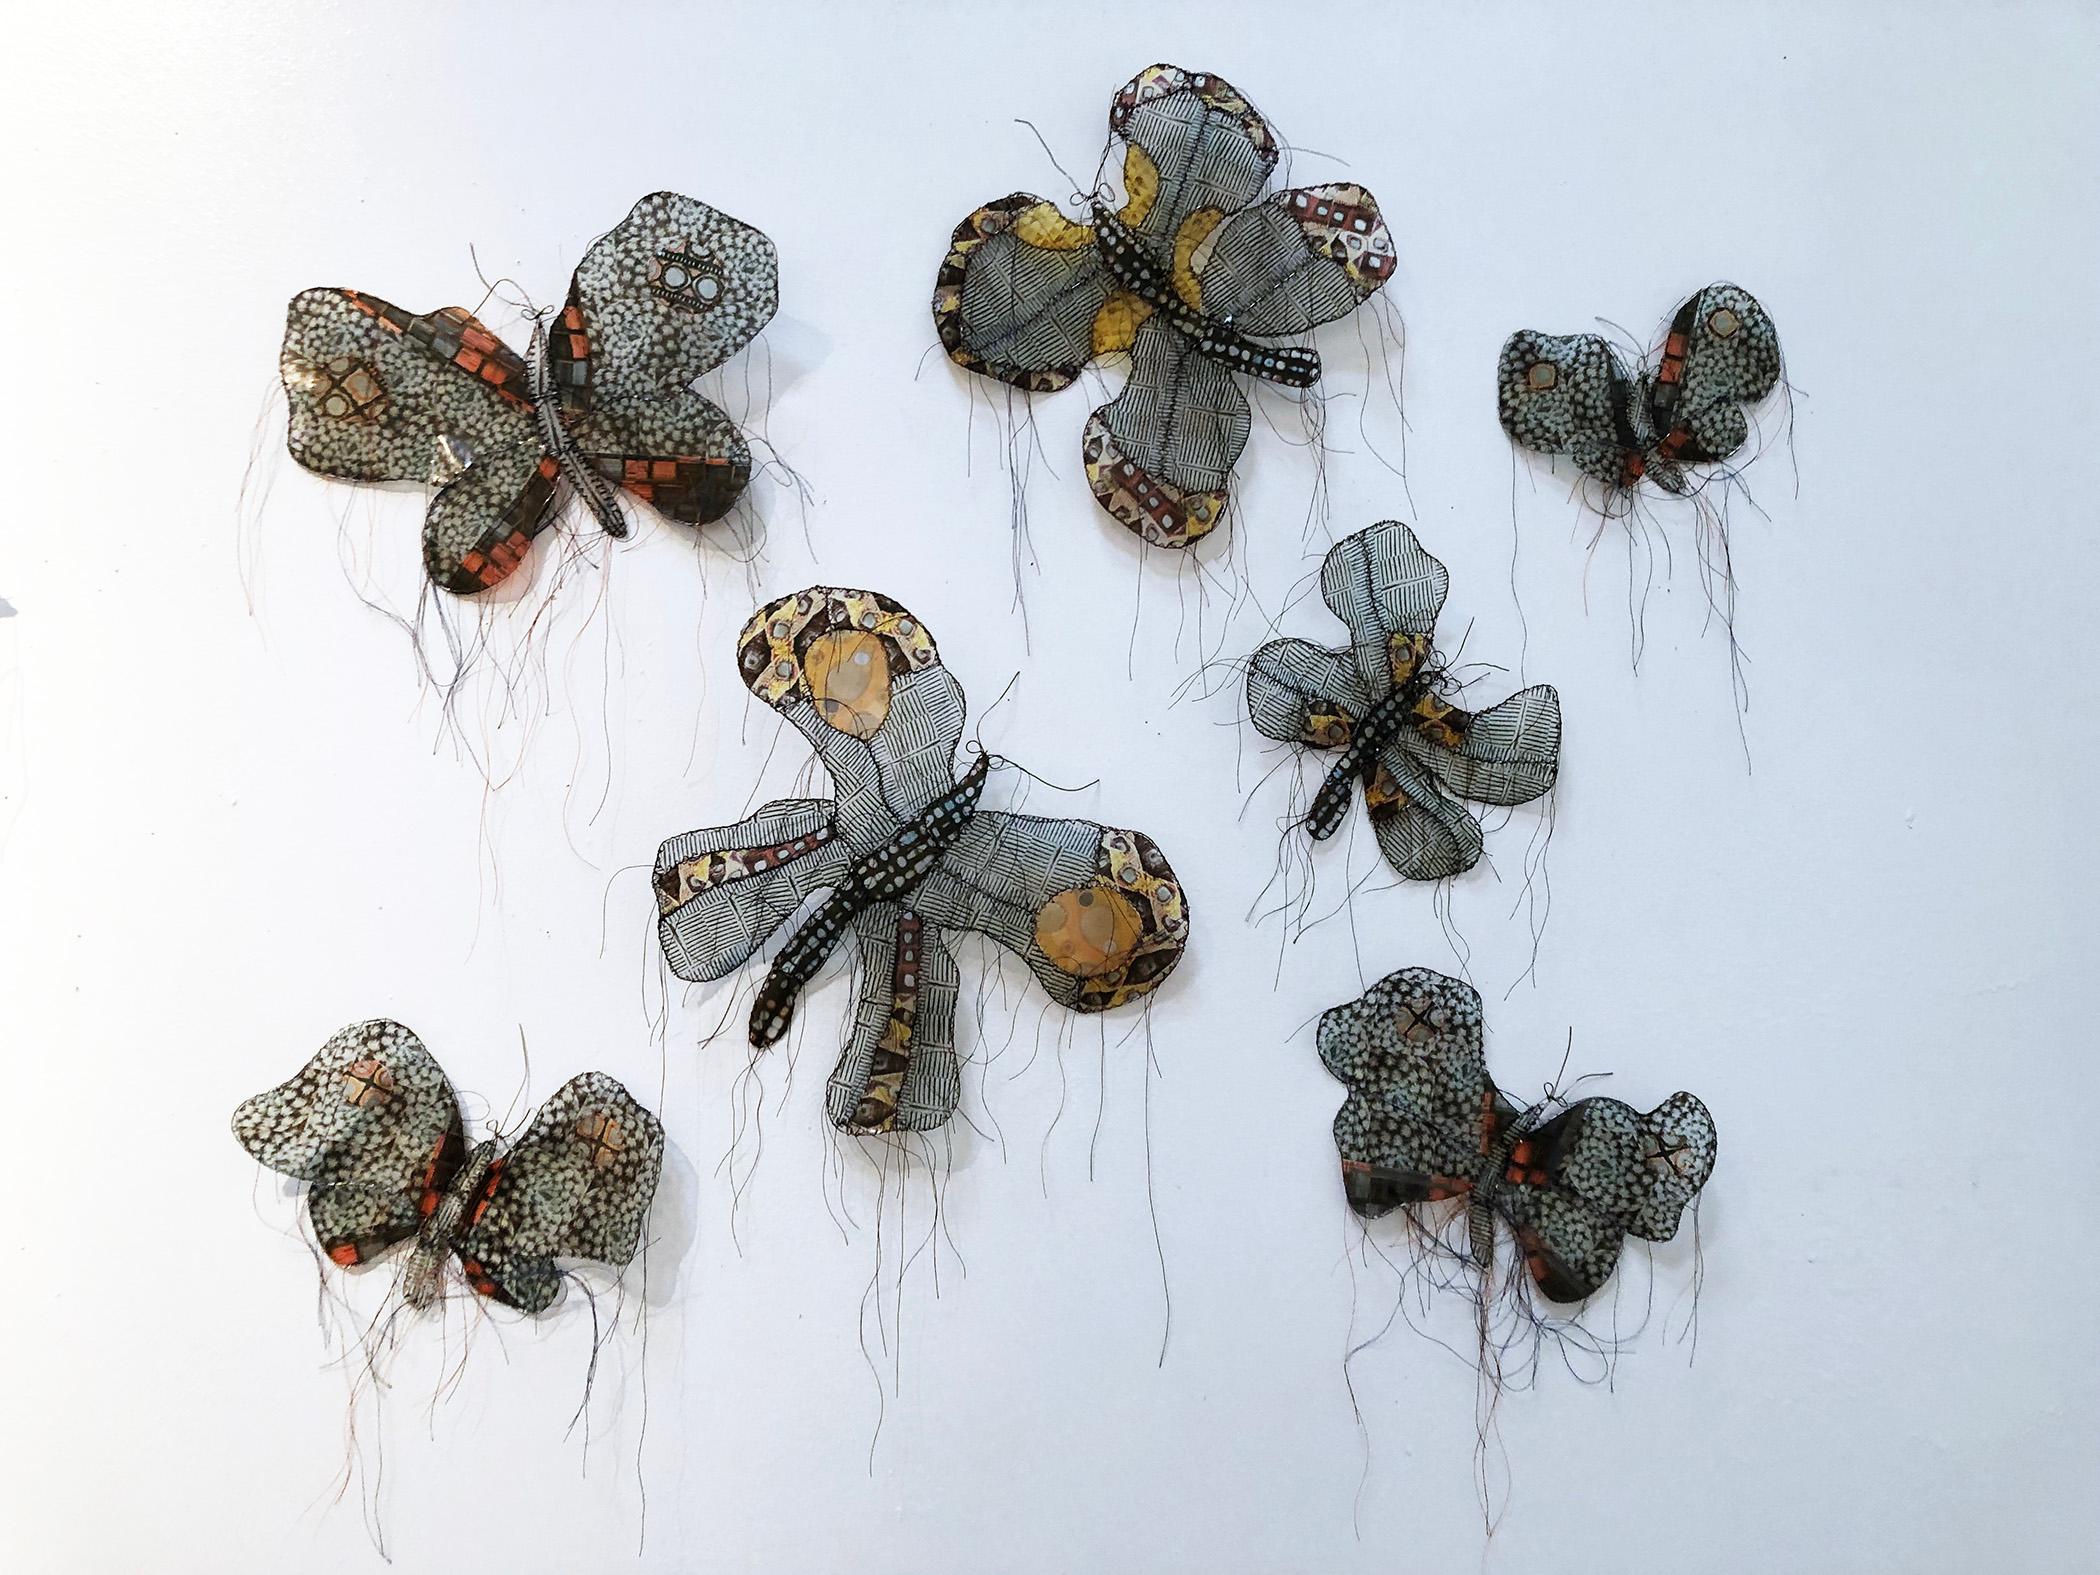 Gwen Samuels Figurative Sculpture - Seven Black and White Butterflies - Installation Mixed Media Butterfly Sculpture